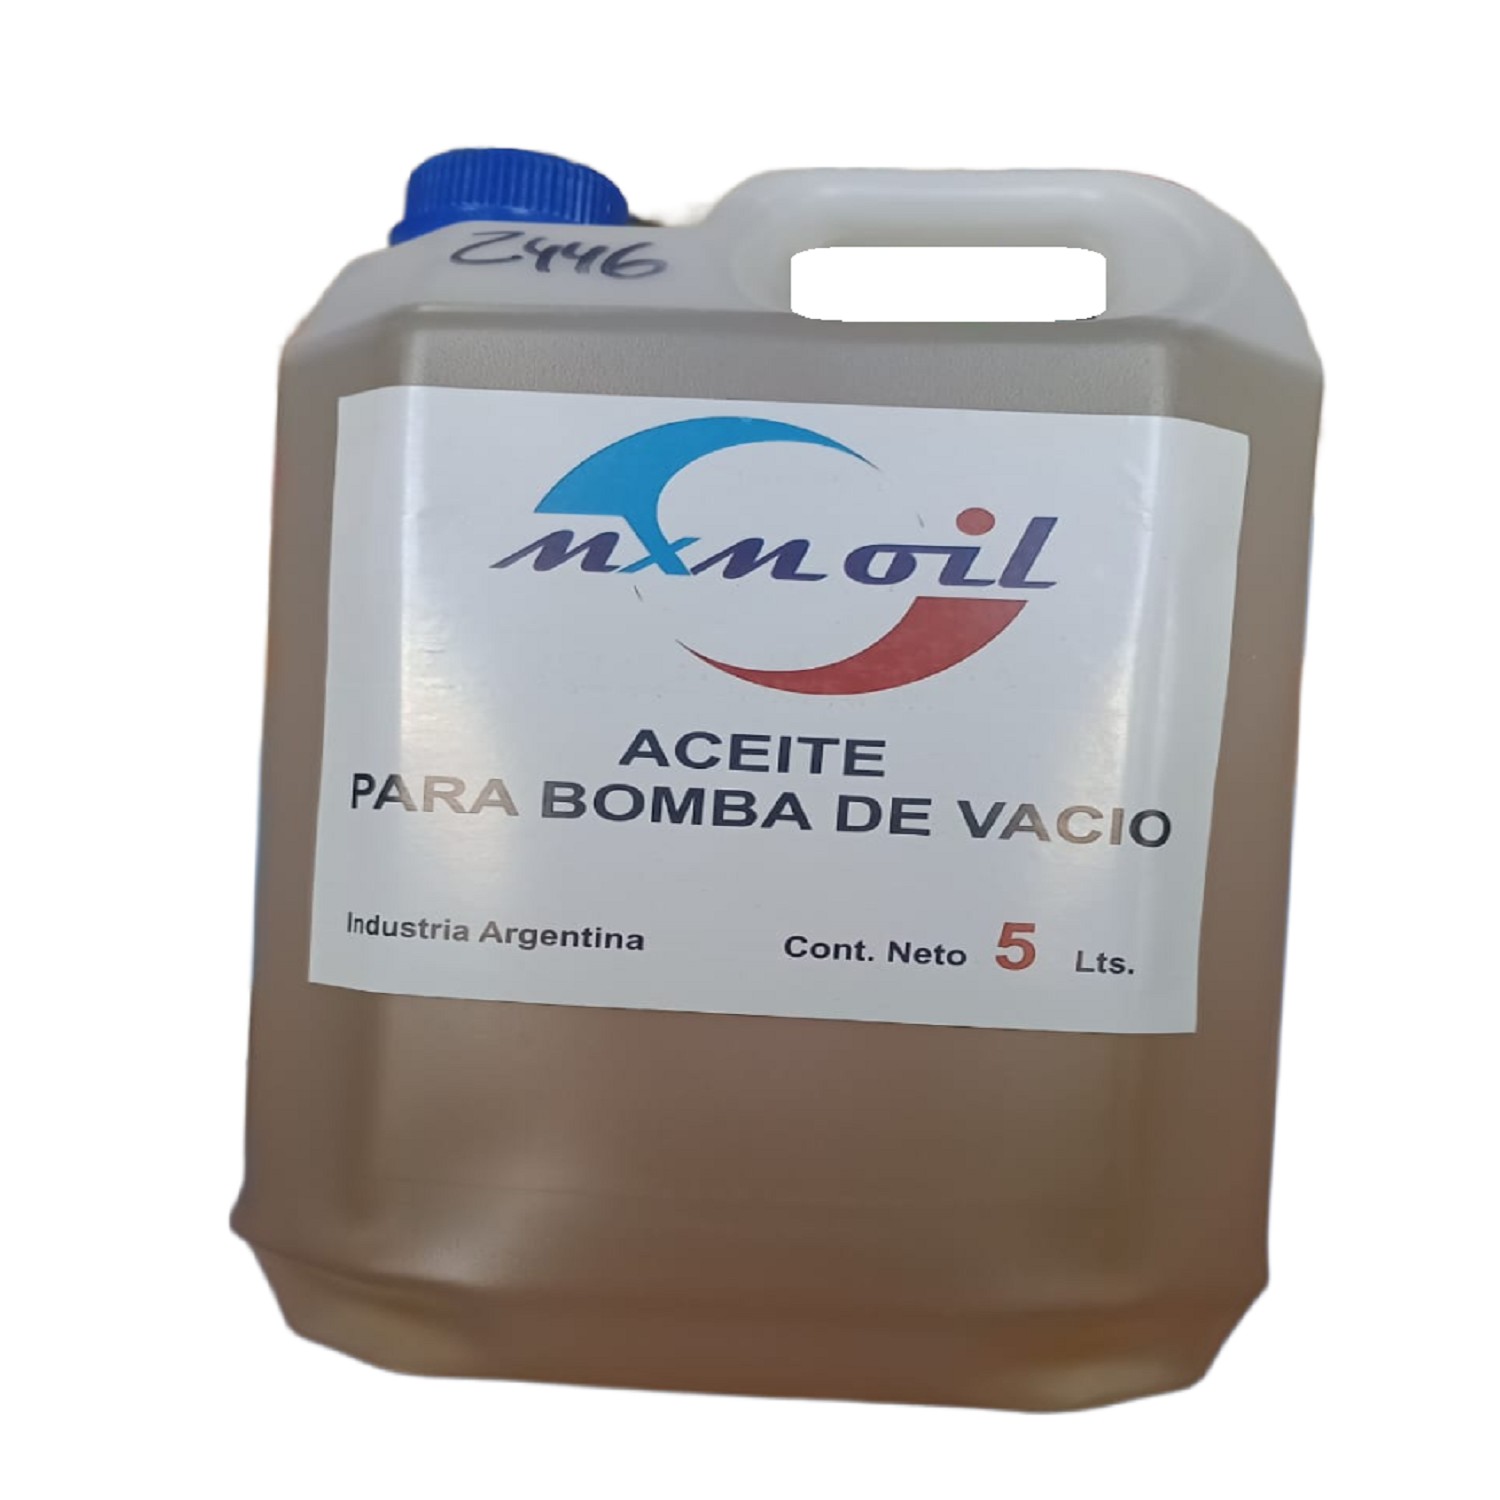 ACEITE PARA BOMBA DE VACIO MXM OIL 5 LITROS